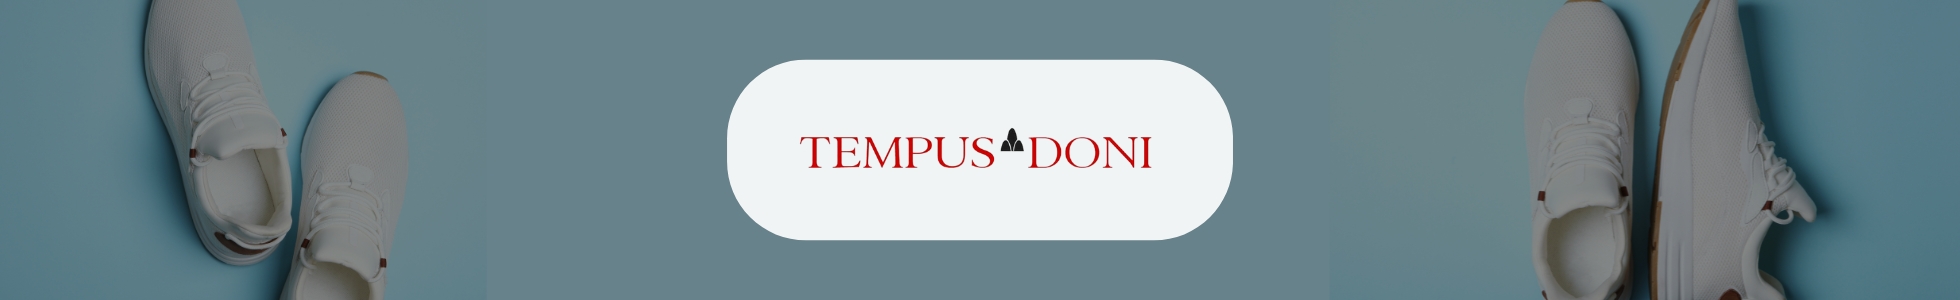 Tempus Doni - Shop online scarpe